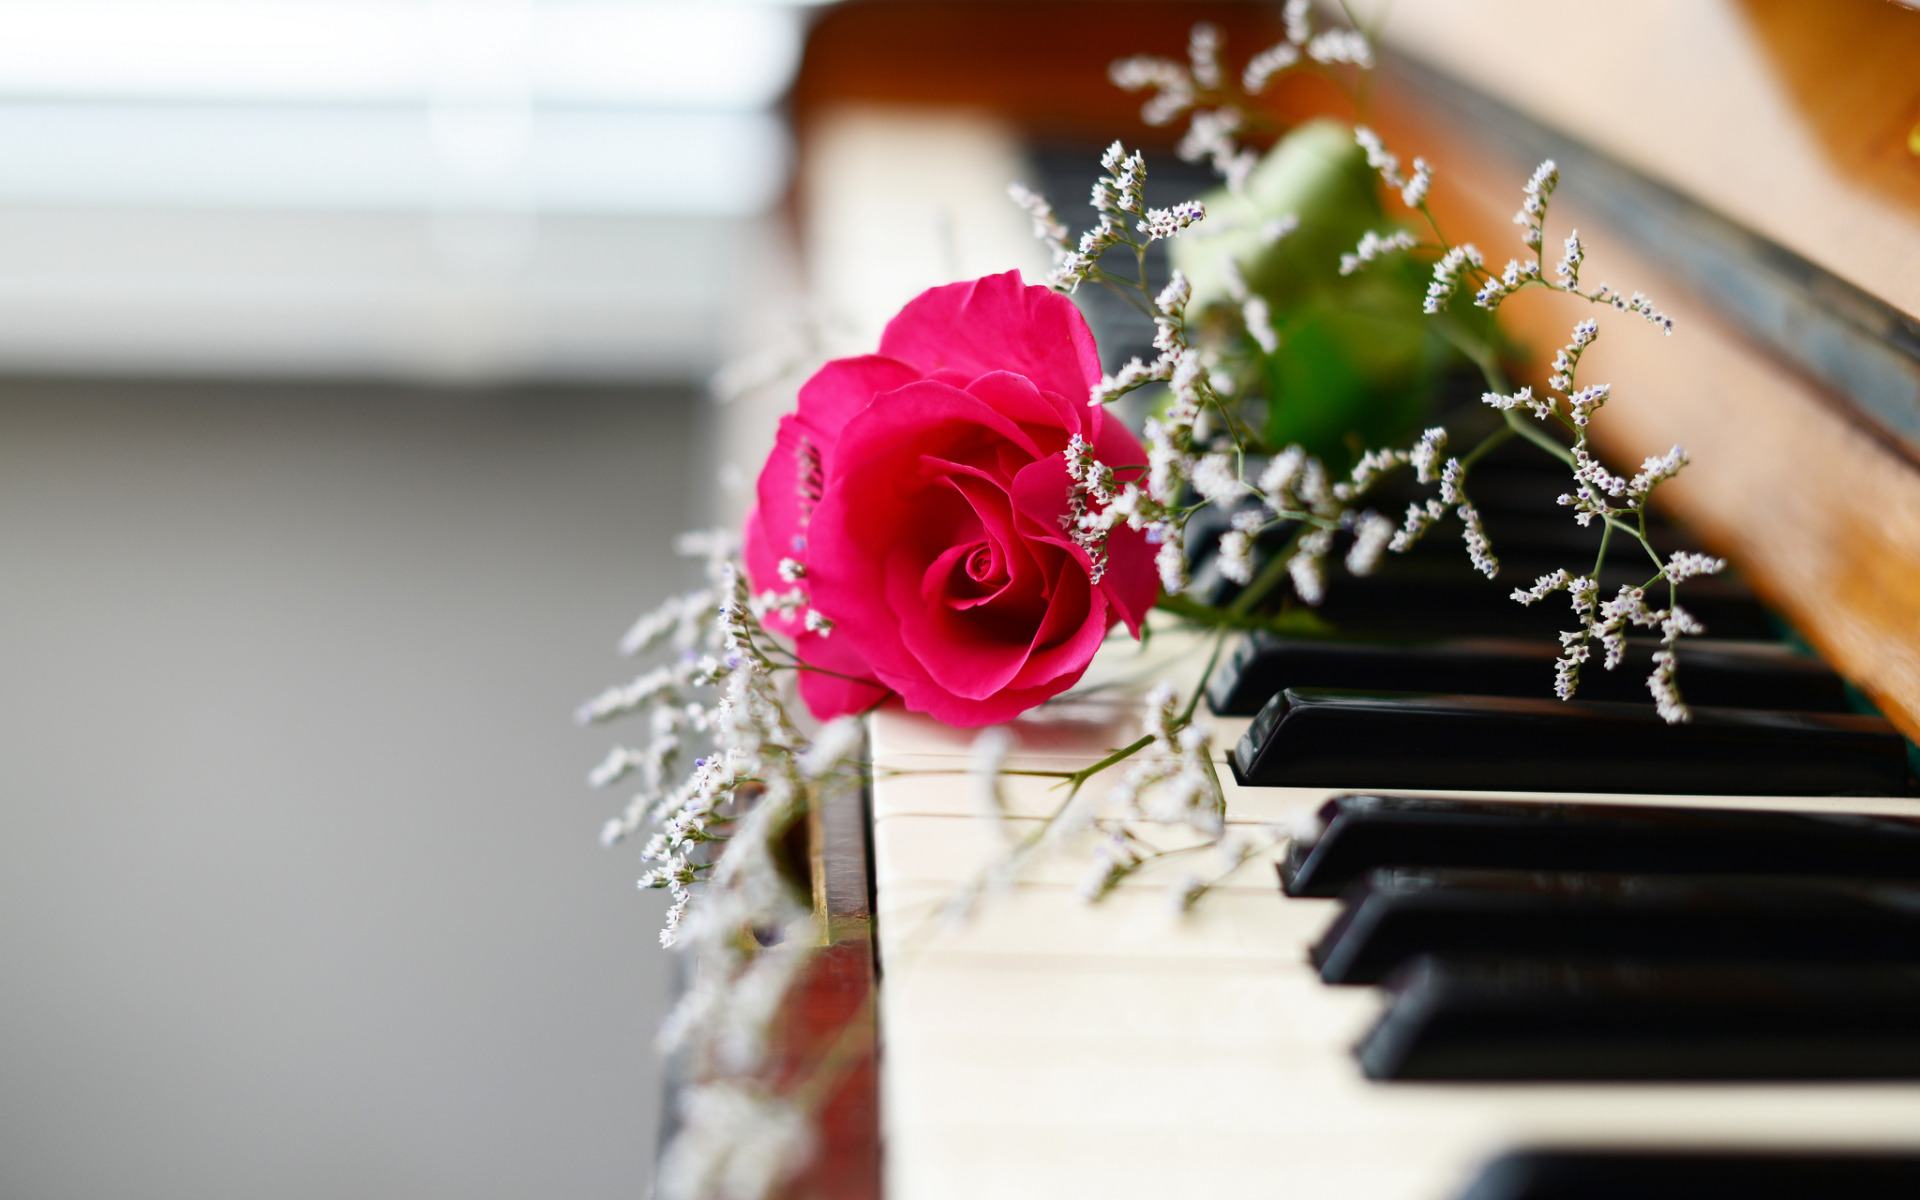 Песня красивый учитель. Музыкальный букет цветов. Картинки пианино и цветы. Цветы на рояле. Музыкальные инструменты и цветы.